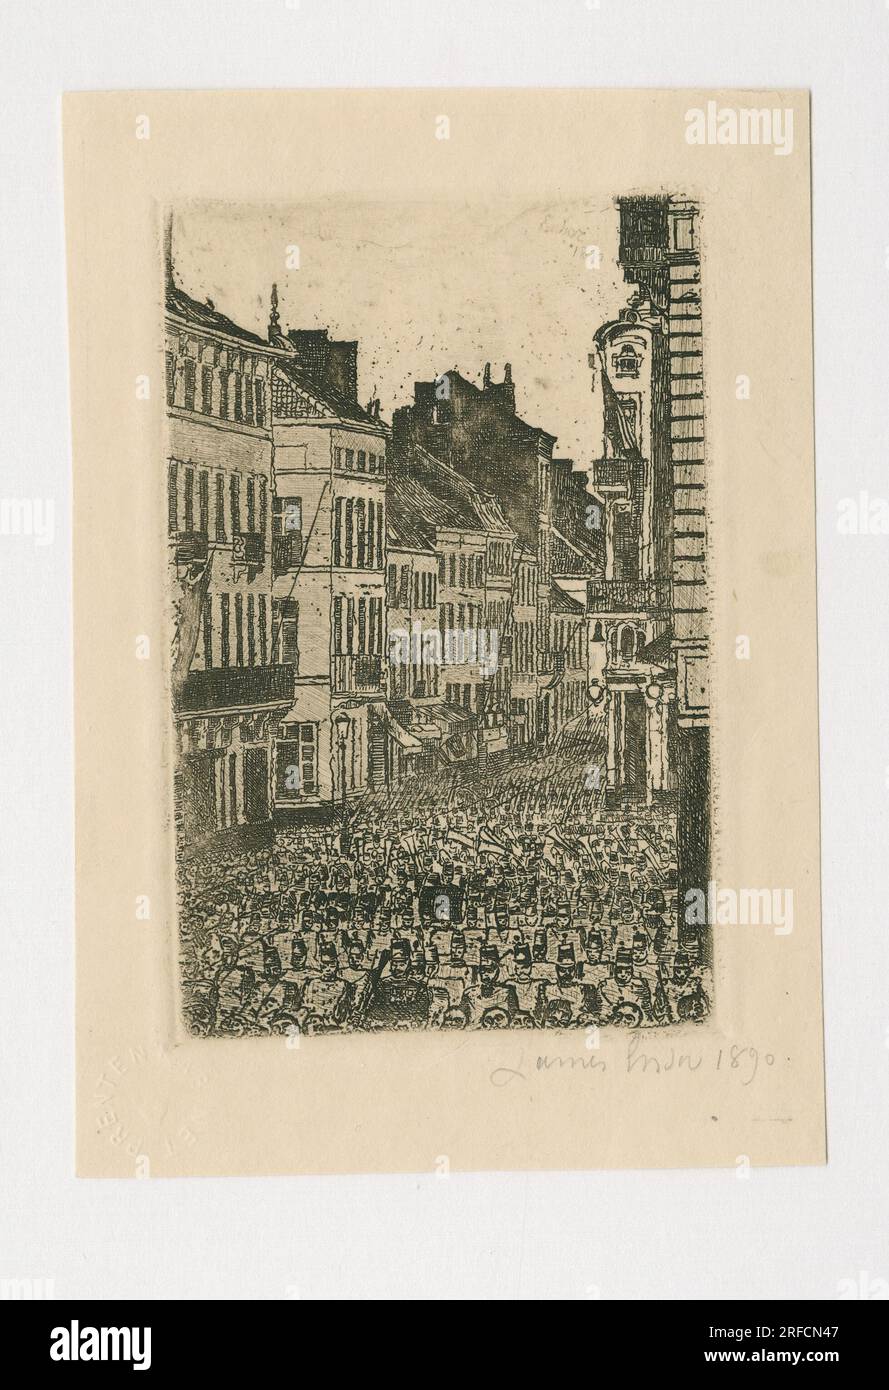 La musique Rue de Flandre à Ostende 1890 by James Ensor Stock Photo